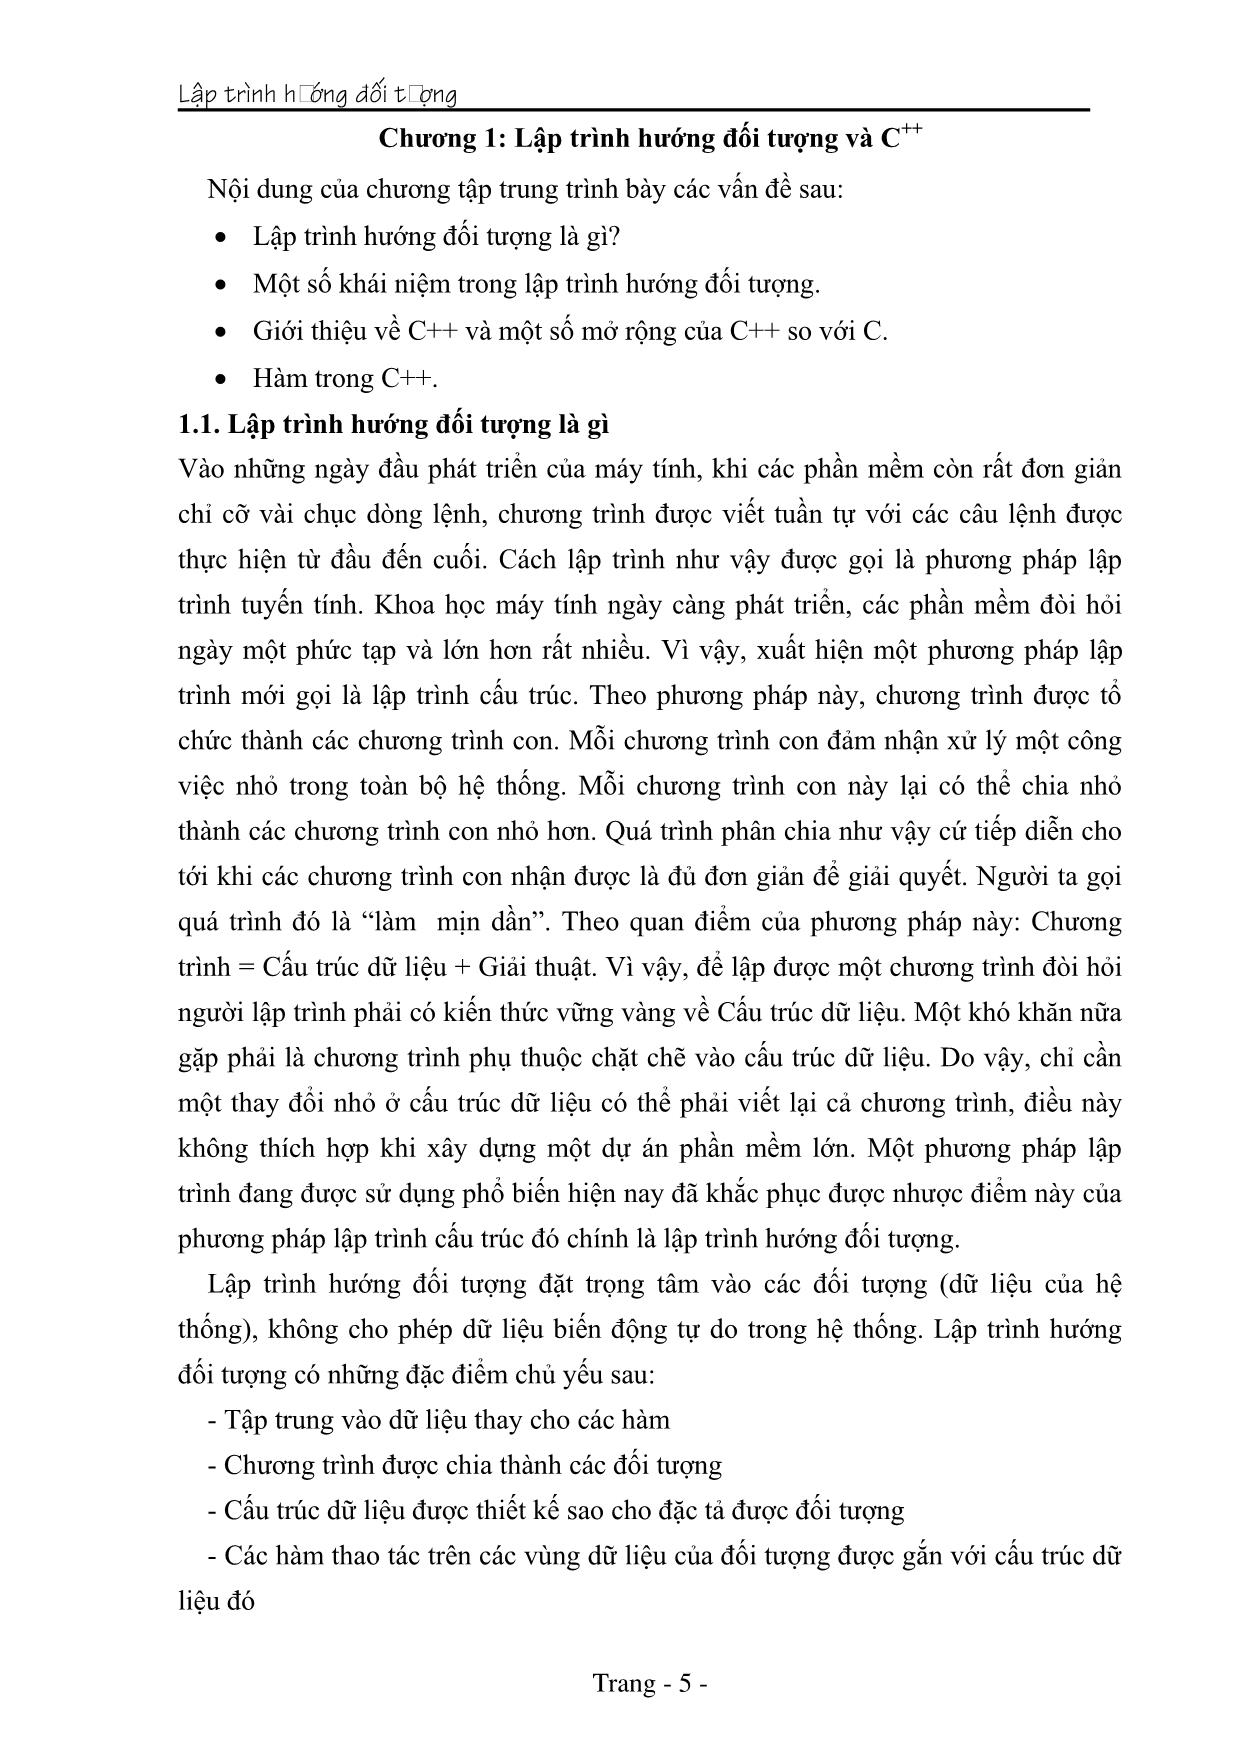 Giáo trình Lập trình hướng đối tượng (Phần 1) trang 5